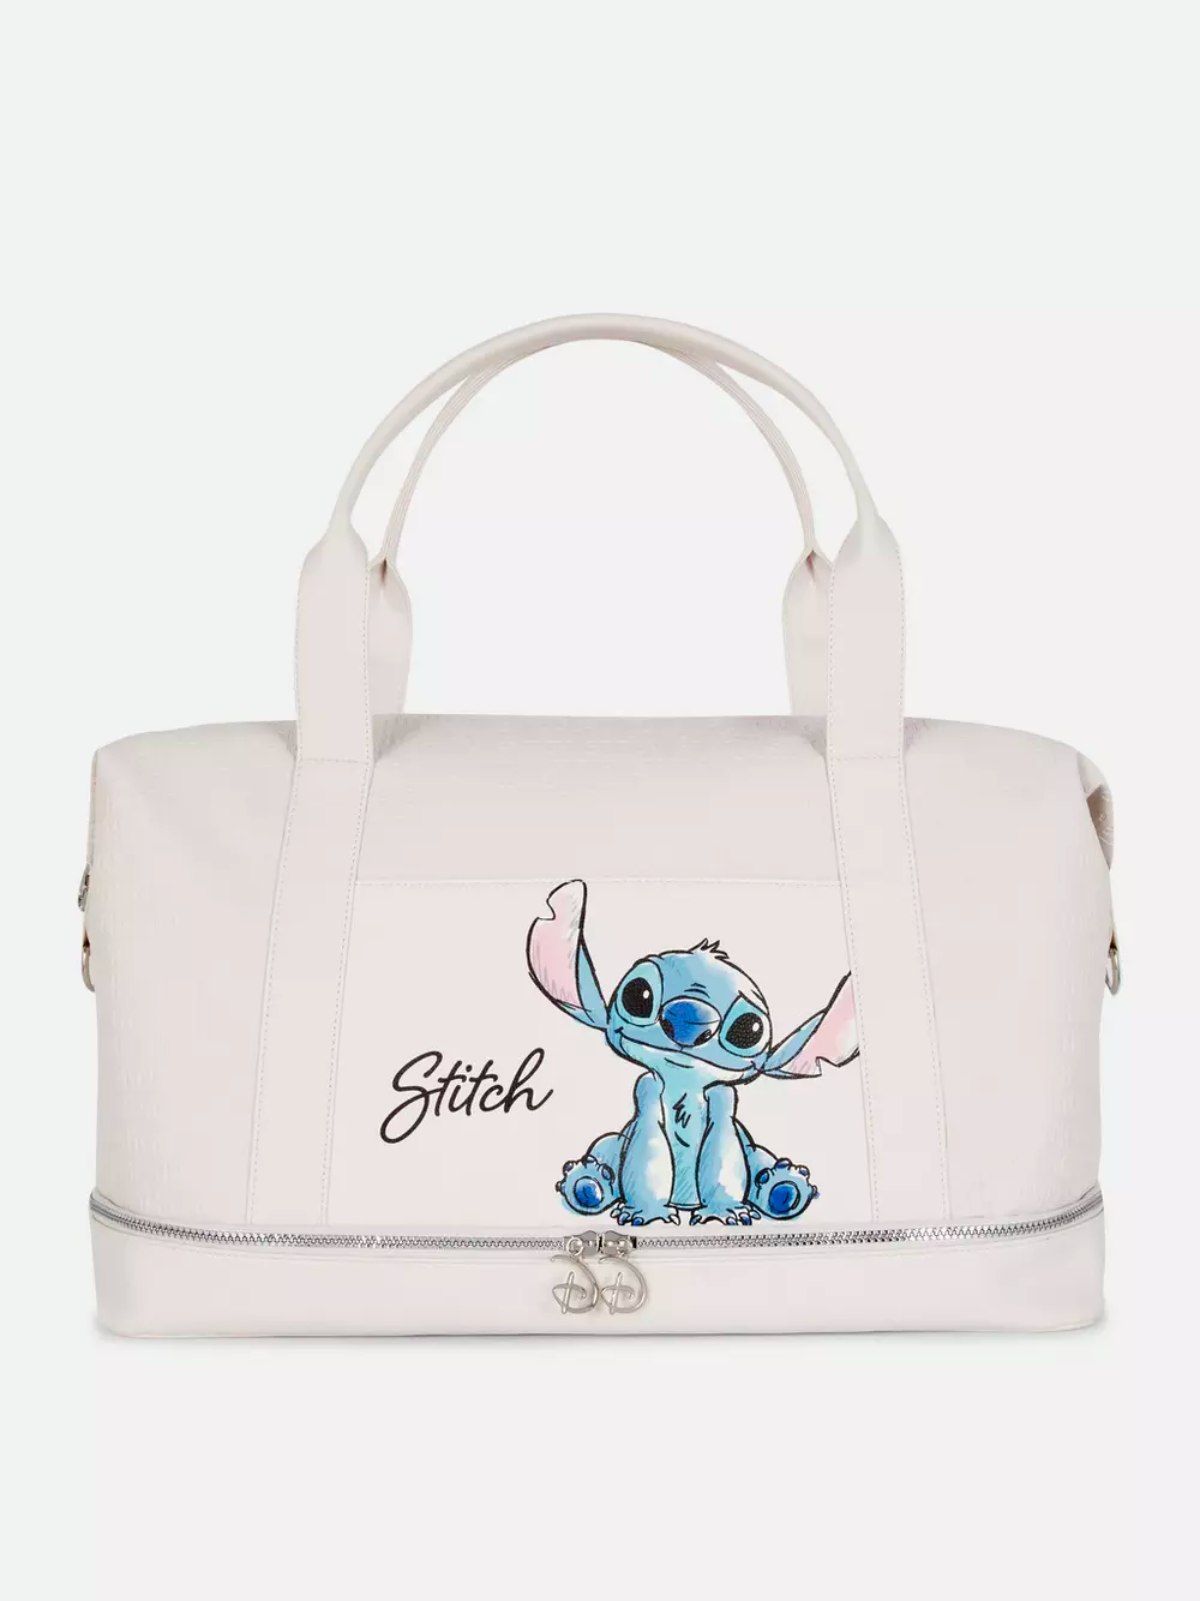 Neceser de viaje Disney - Lilo y Stitch